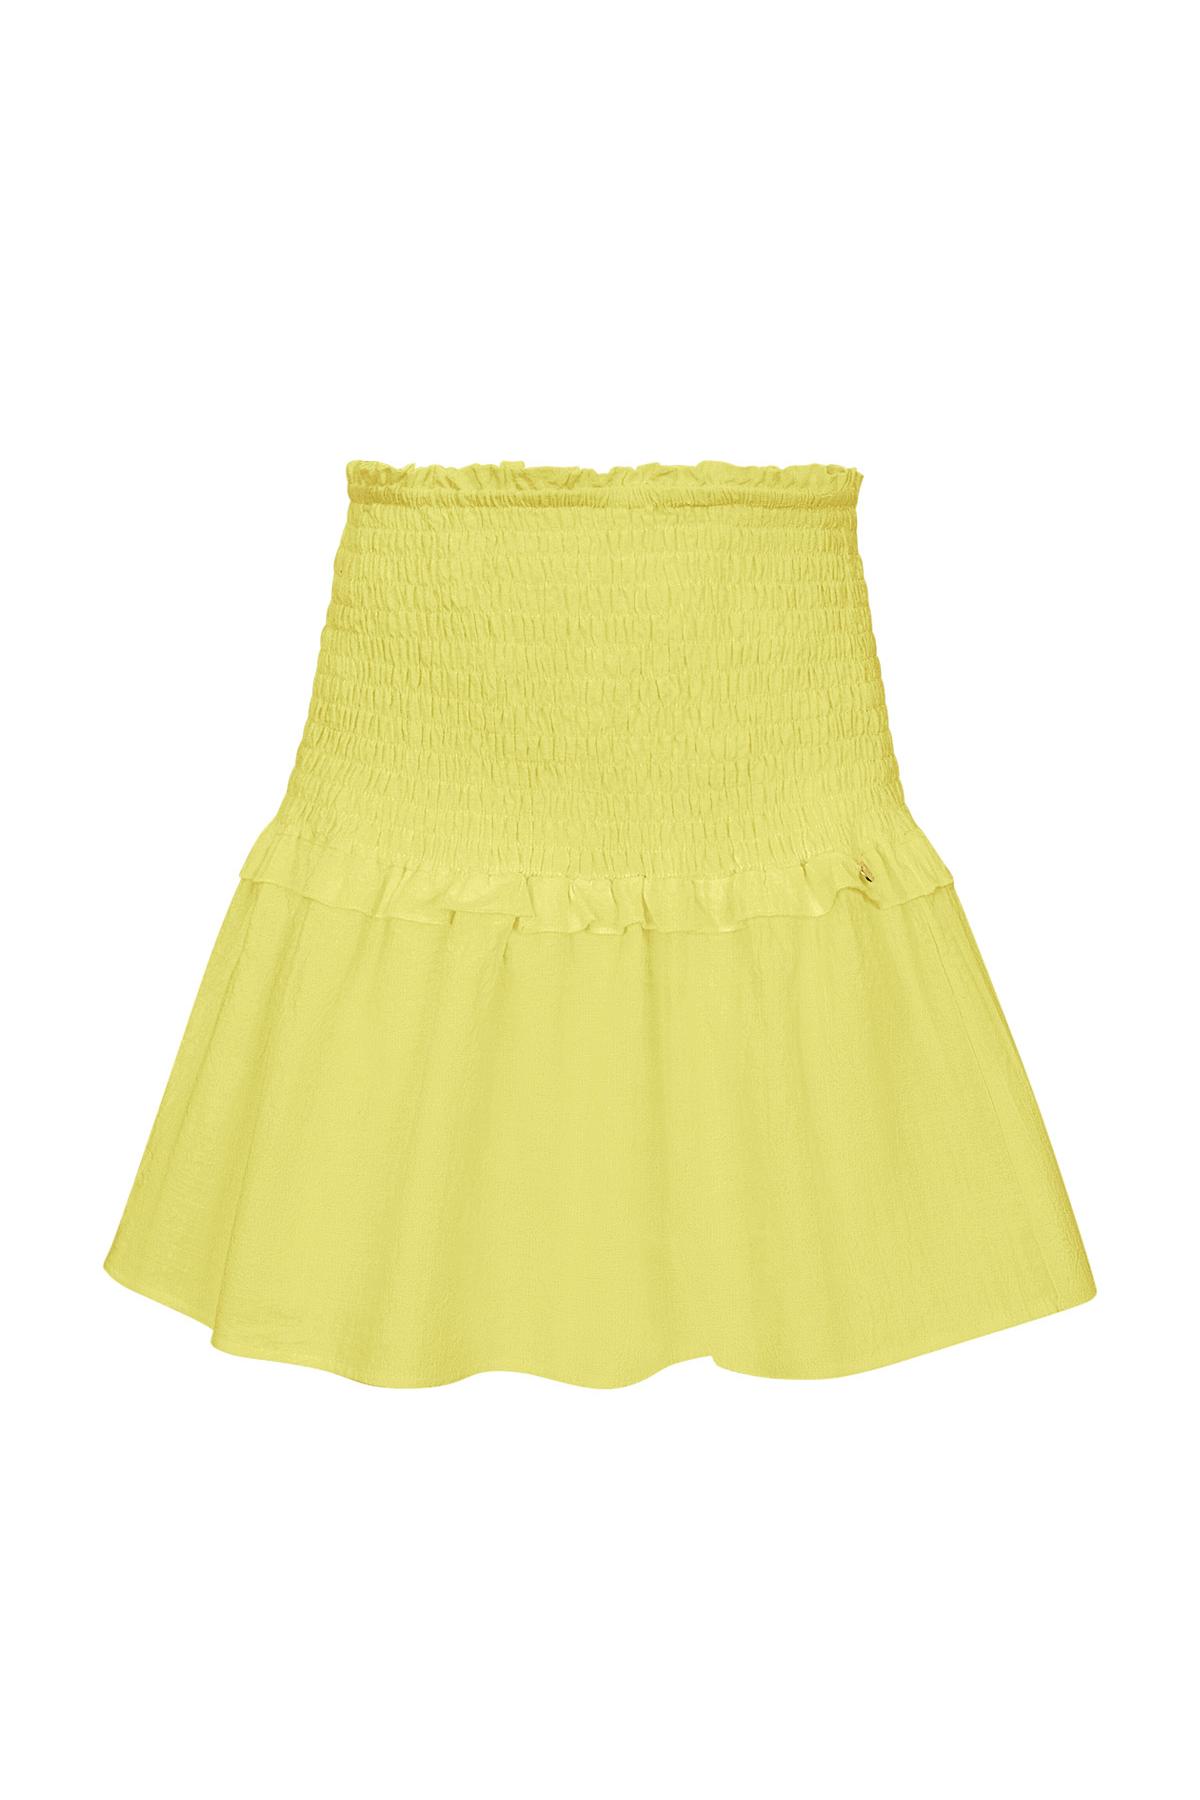 Detalle falda evasé - amarillo M